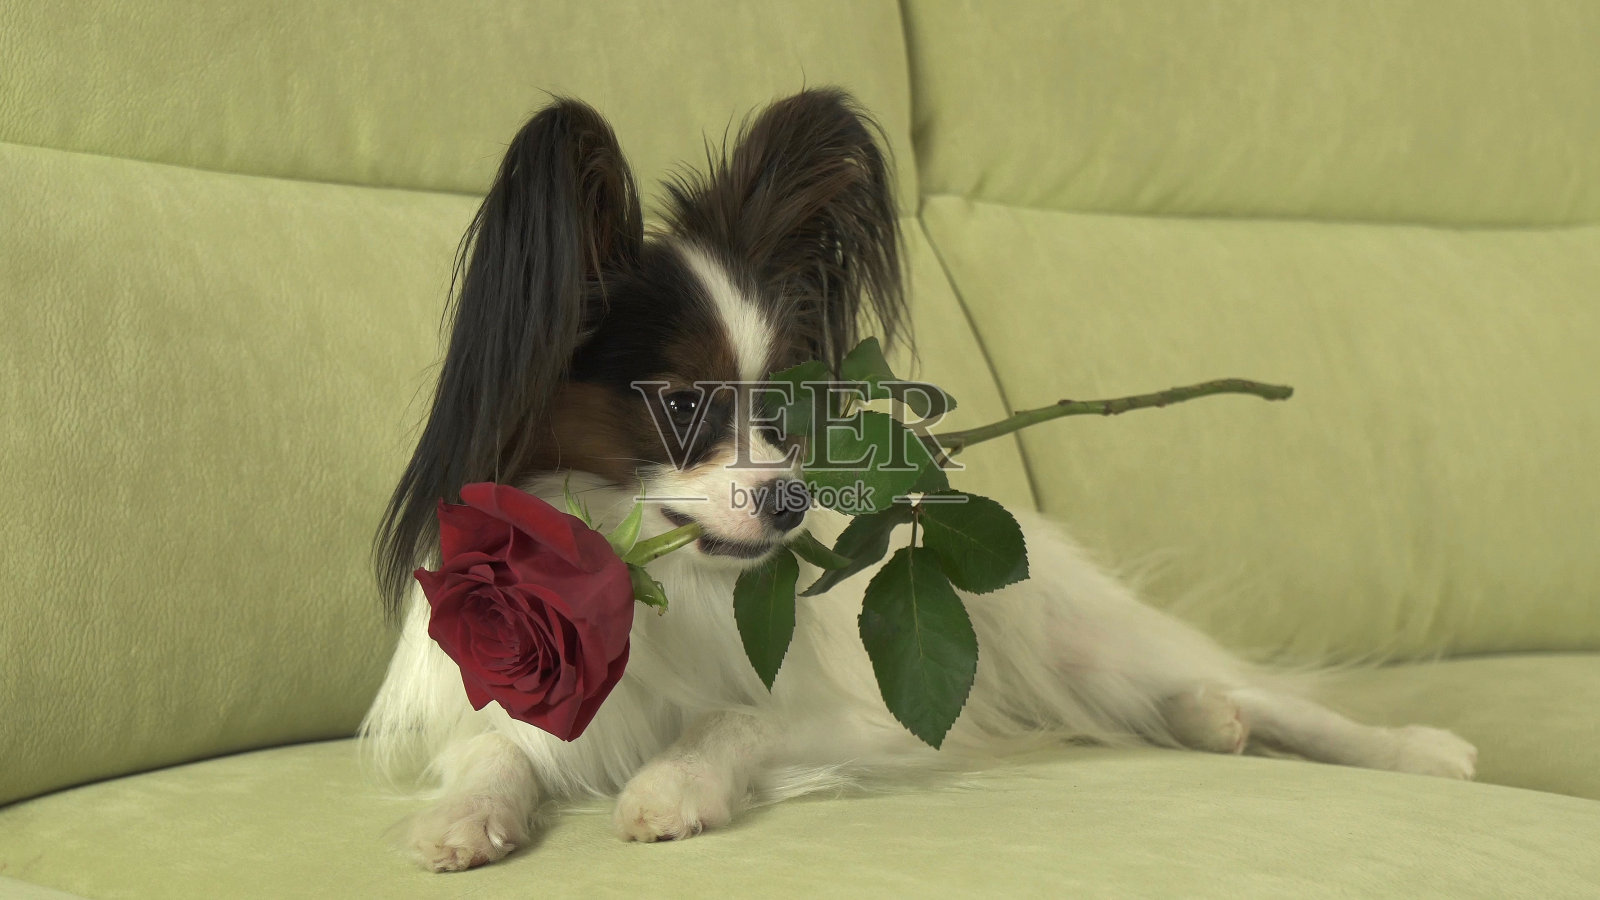 狗蝶耳犬在情人节的时候嘴里衔着红玫瑰以示爱意照片摄影图片